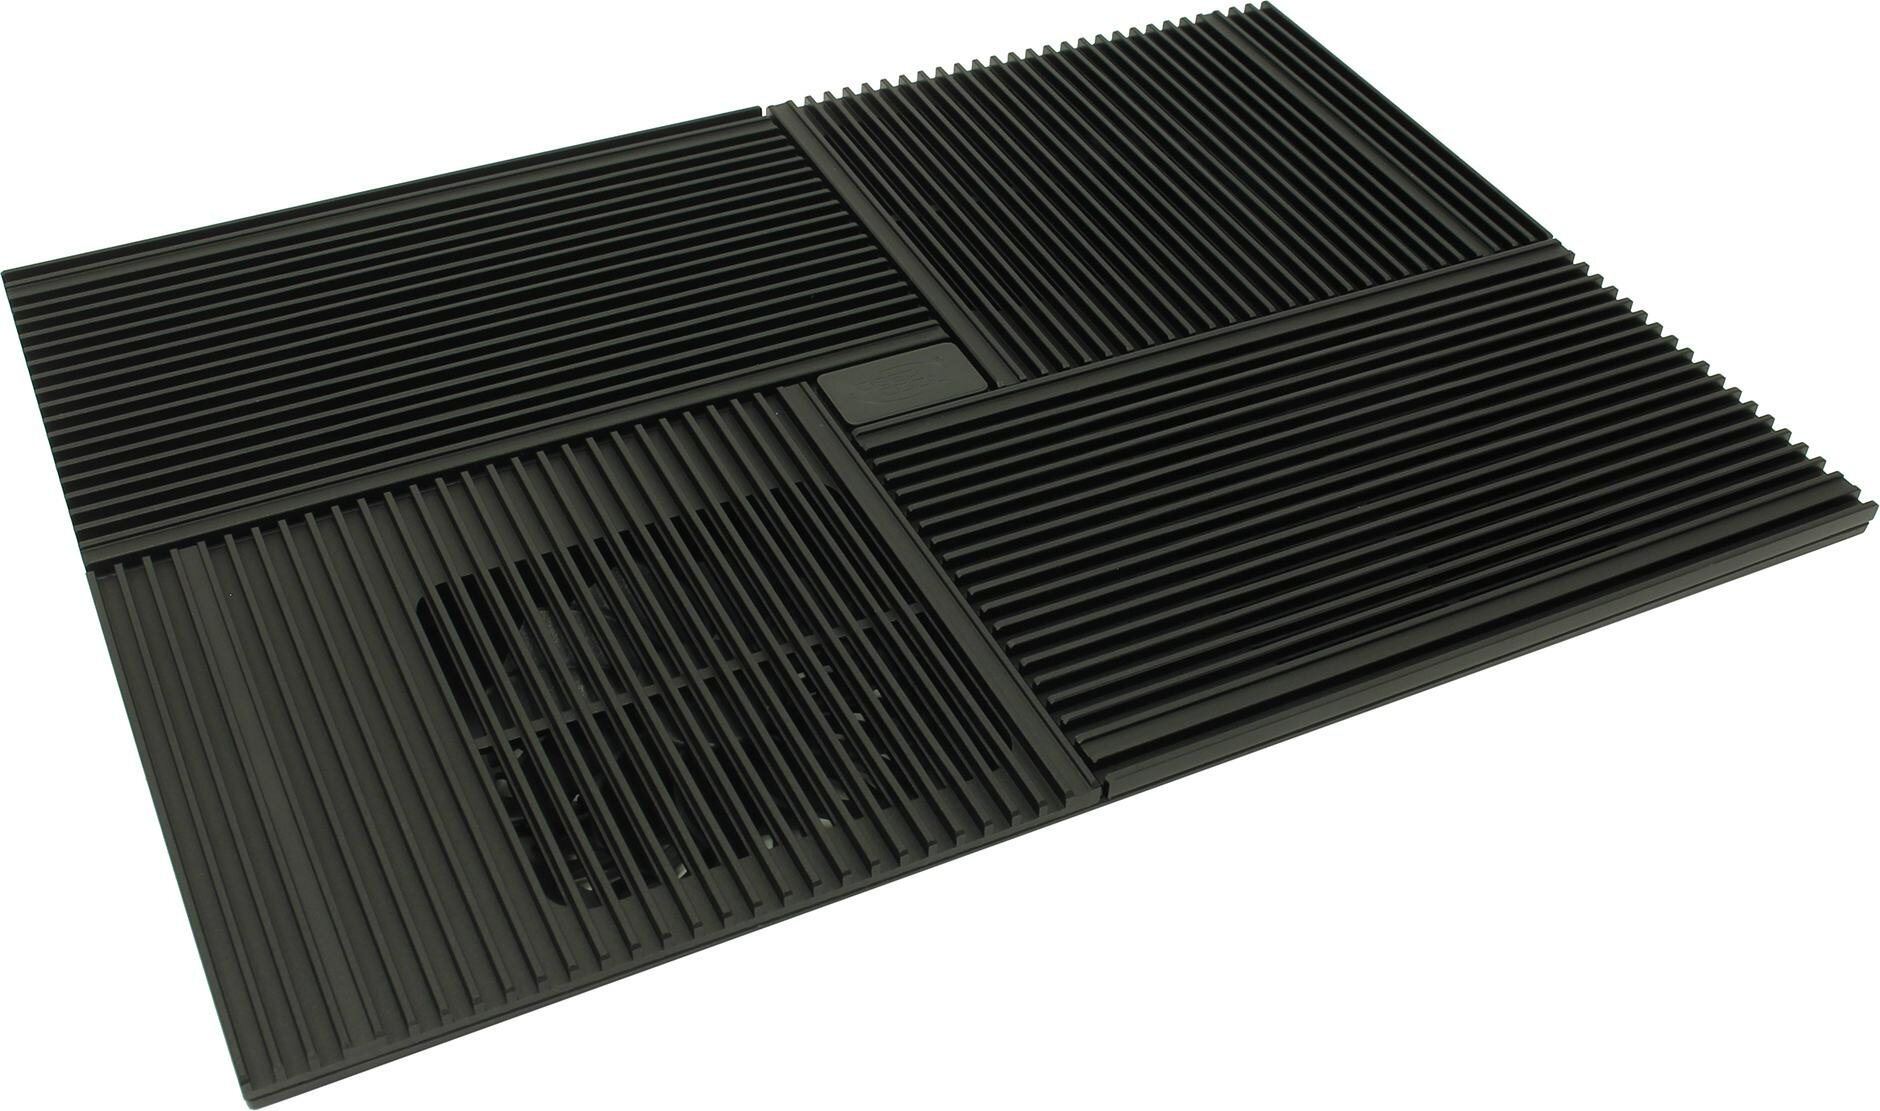 Подставка для ноутбука DEEPCOOL MULTI CORE X8 (8шт/кор, до 15.6", вентиляторы 2x100мм + 2x140мм, 2USB ) Retail box